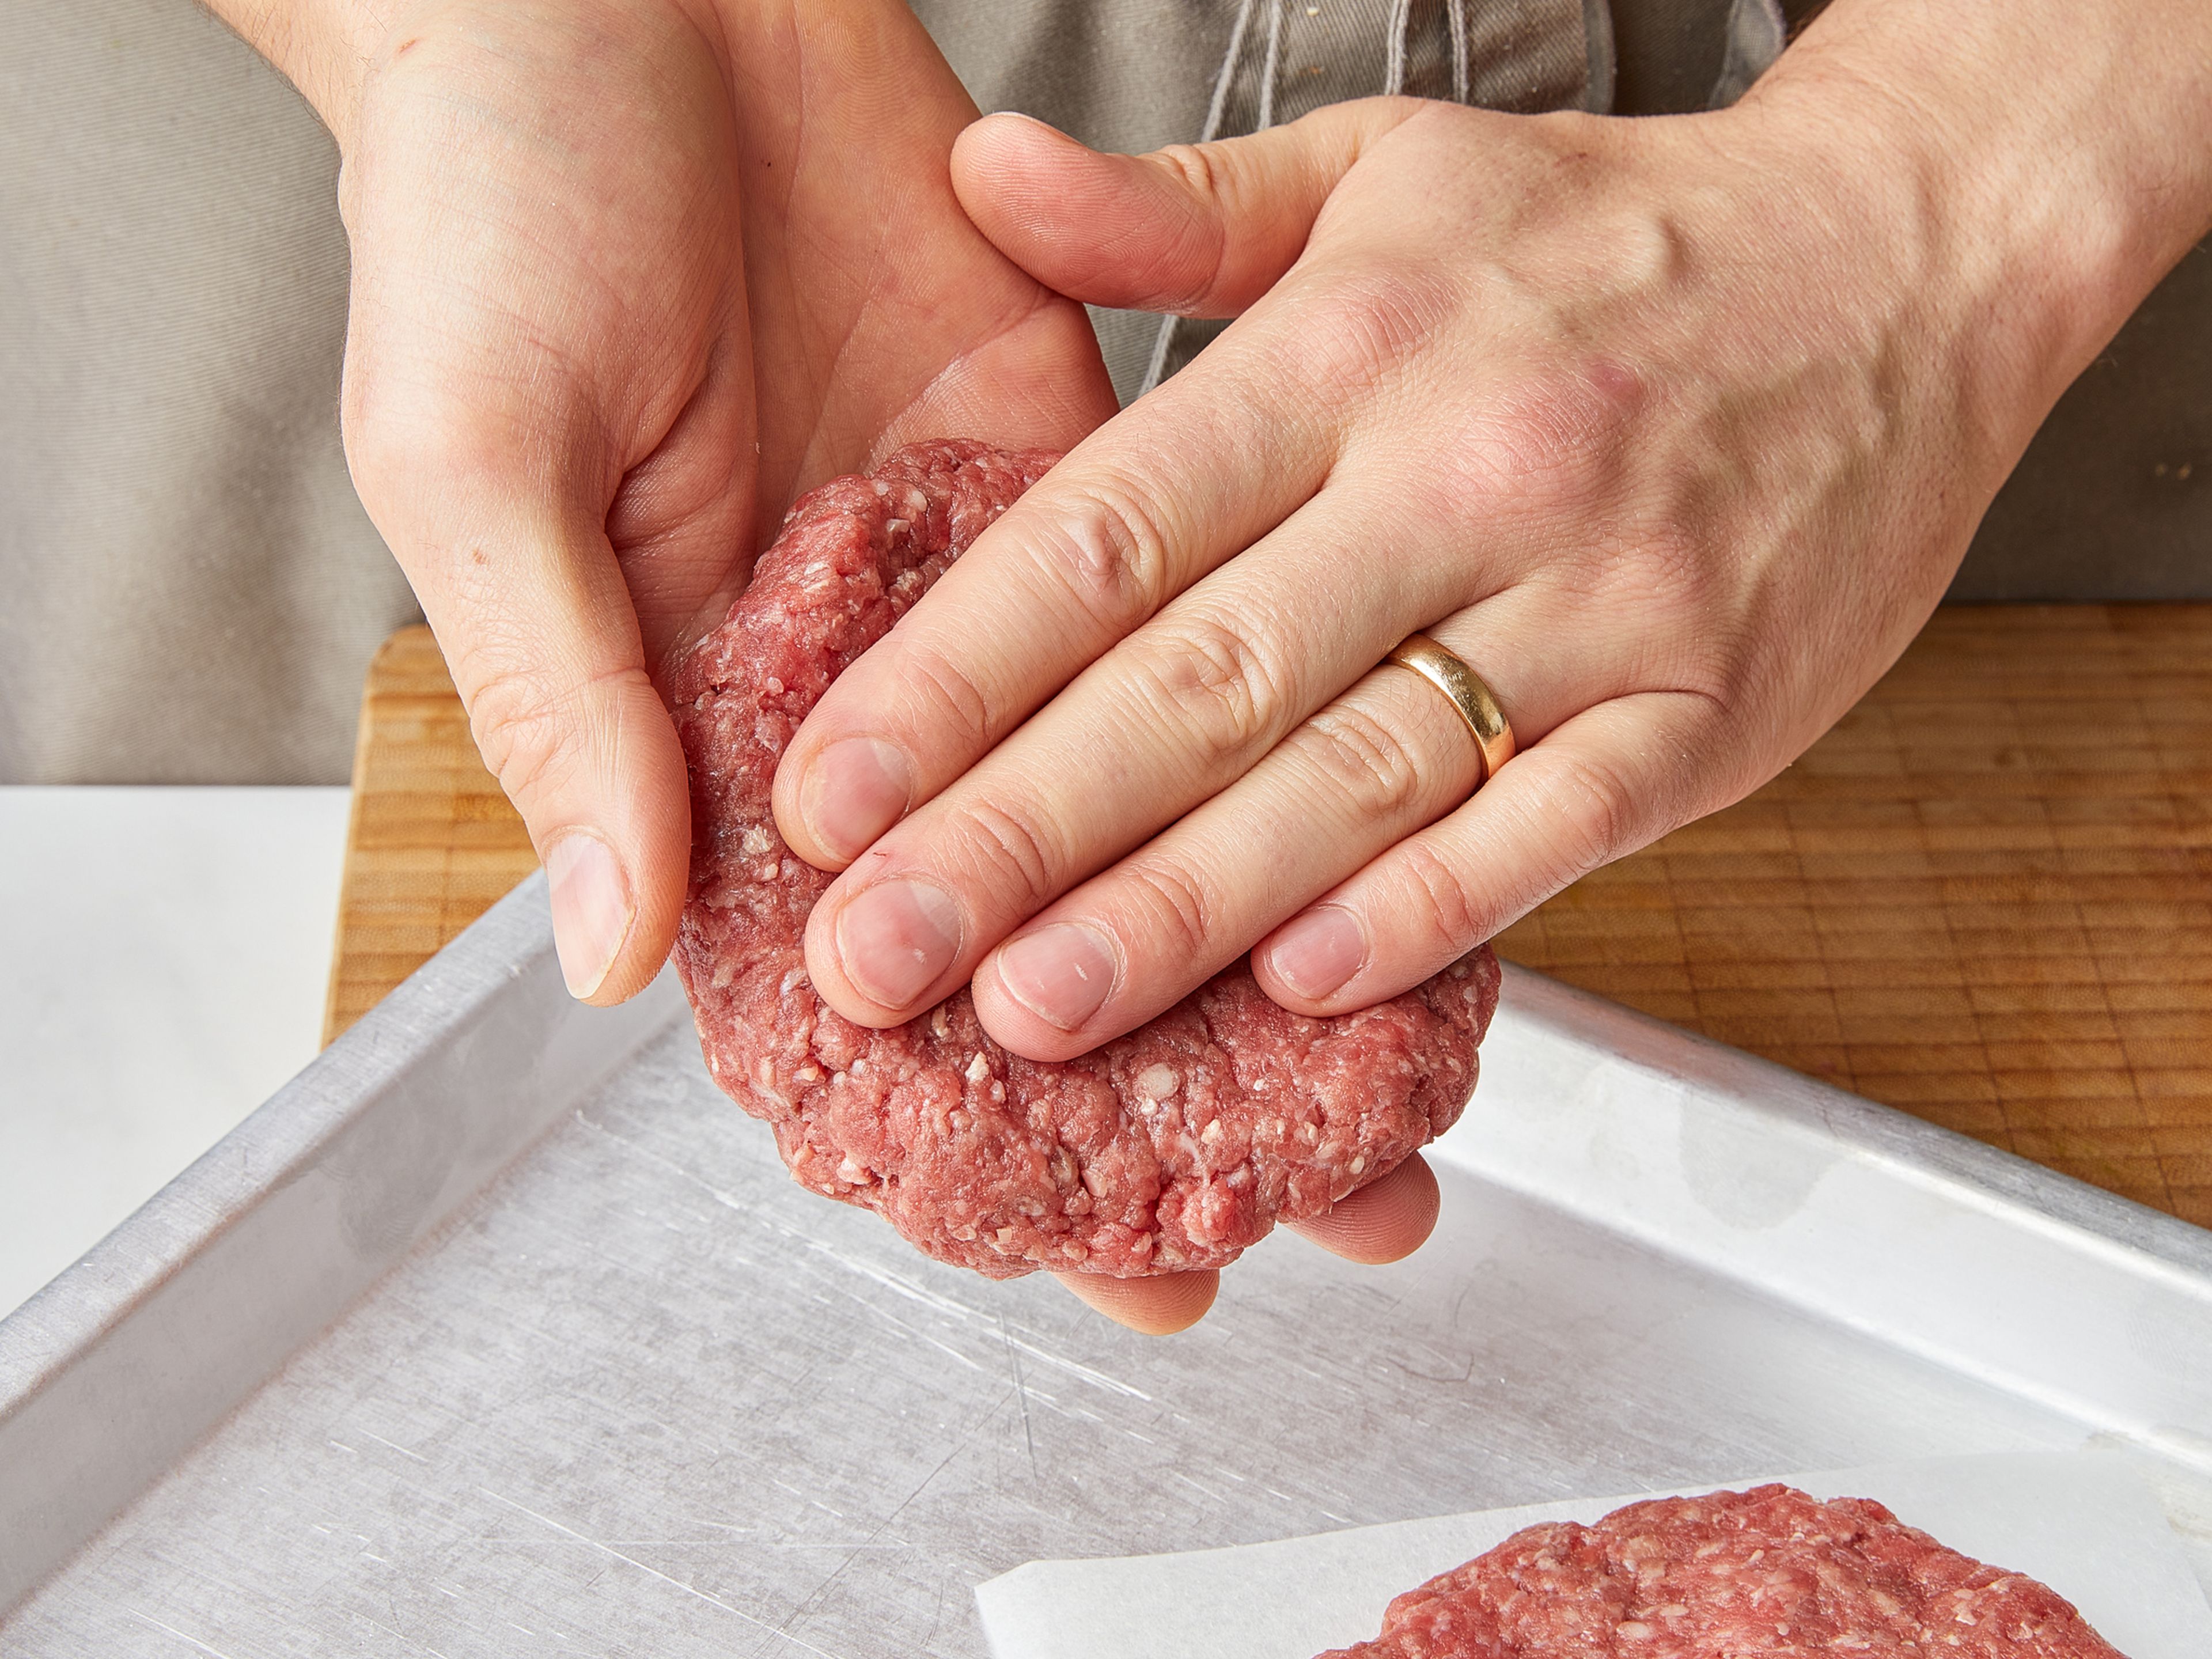 Zwiebeln schälen und in feine Ringe schneiden. Für die Burger-Patties das Hackfleisch zu einem flachen Burger-Patty pro Person formen, ca. 1 cm dick.